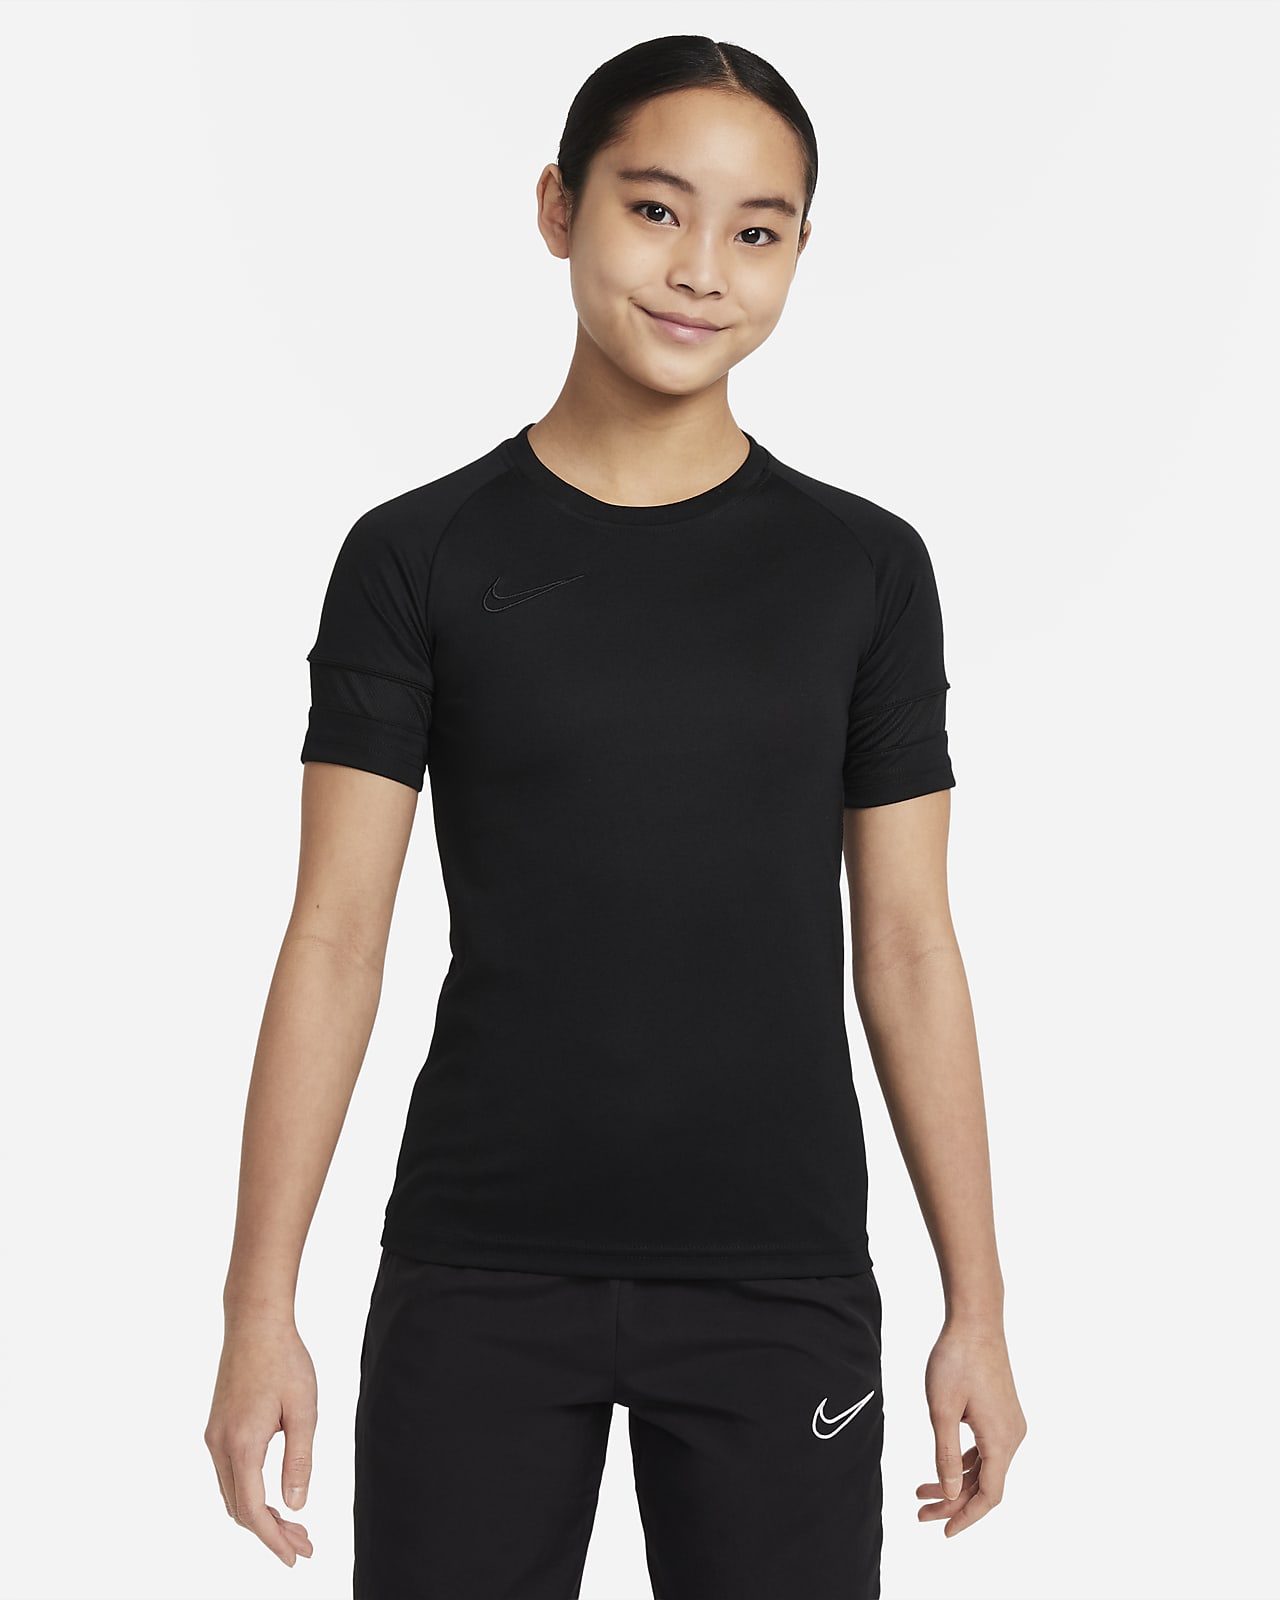 Κοντομάνικη ποδοσφαιρική μπλούζα Nike Dri-FIT Academy για μεγάλα παιδιά